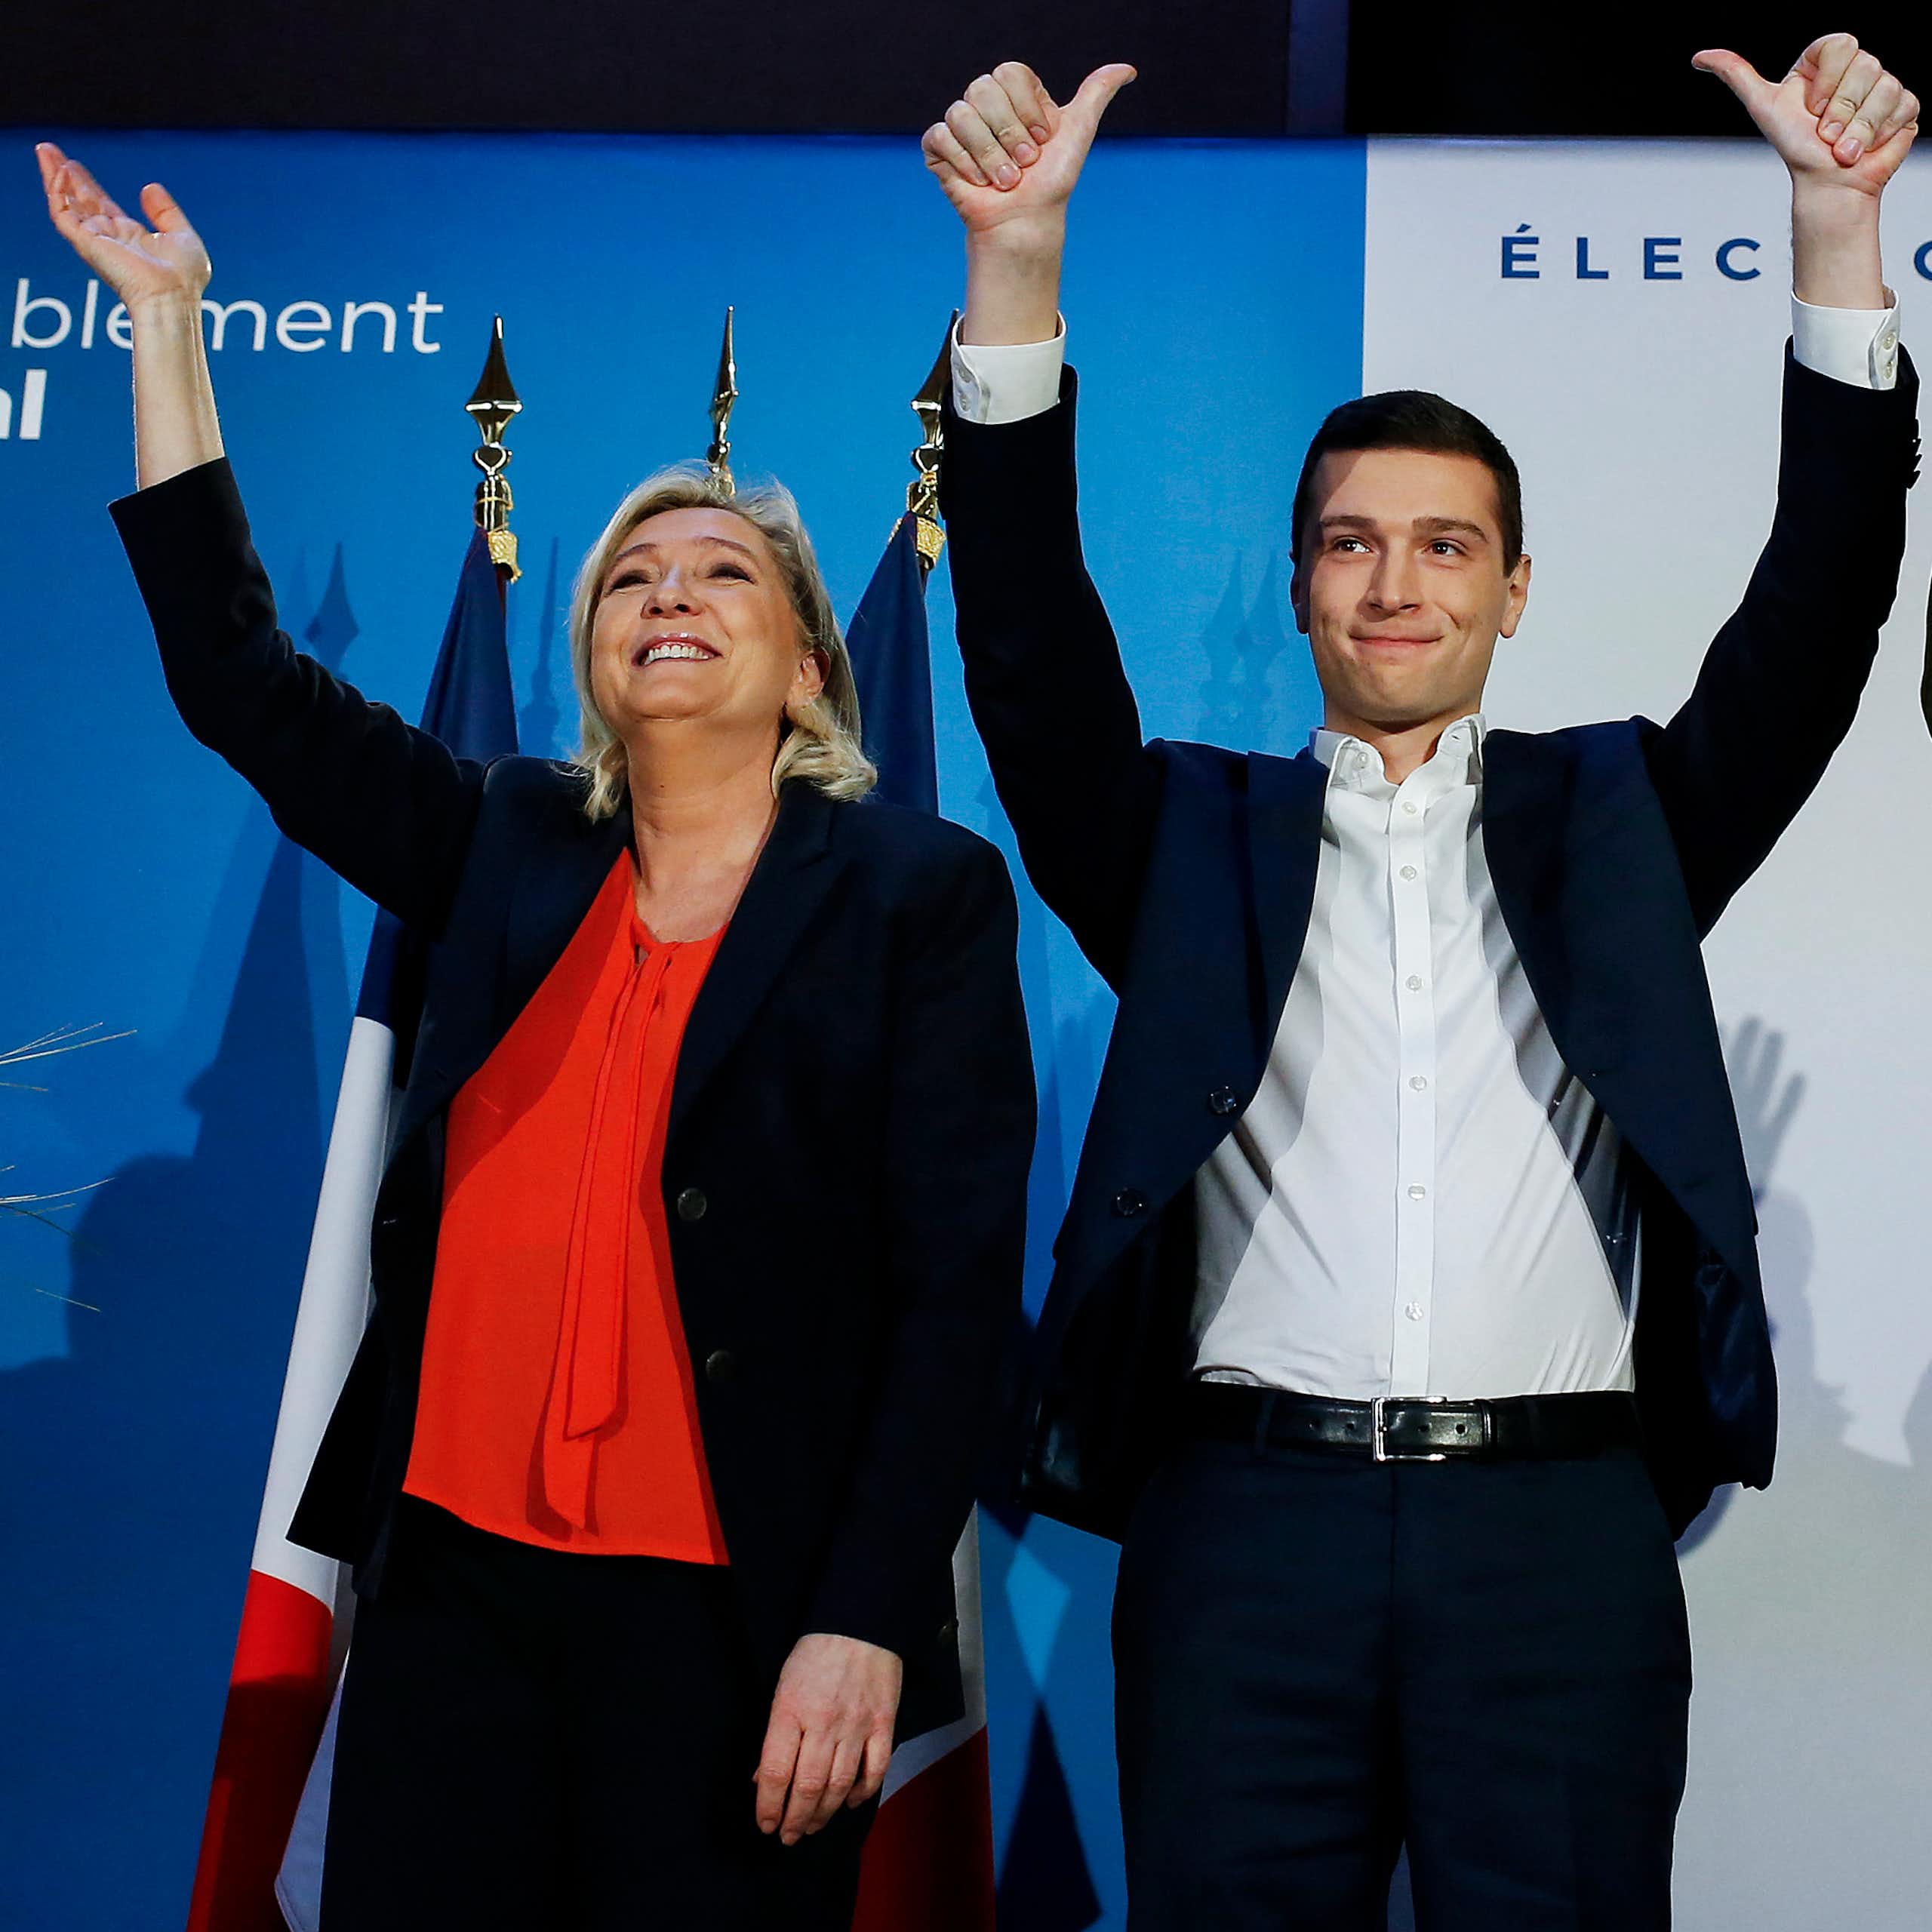 Marine Le Pen (G), le candidat du RN pour les prochaines élections européennes, Jordan Bardella (C), et le candidat du RN au Parlement européen, Hervé Juvin (D), participent à une réunion de campagne pour les élections européennes de mai 2019, à Saint-Ebremond-de-Bonfosse, le 9 février 2019